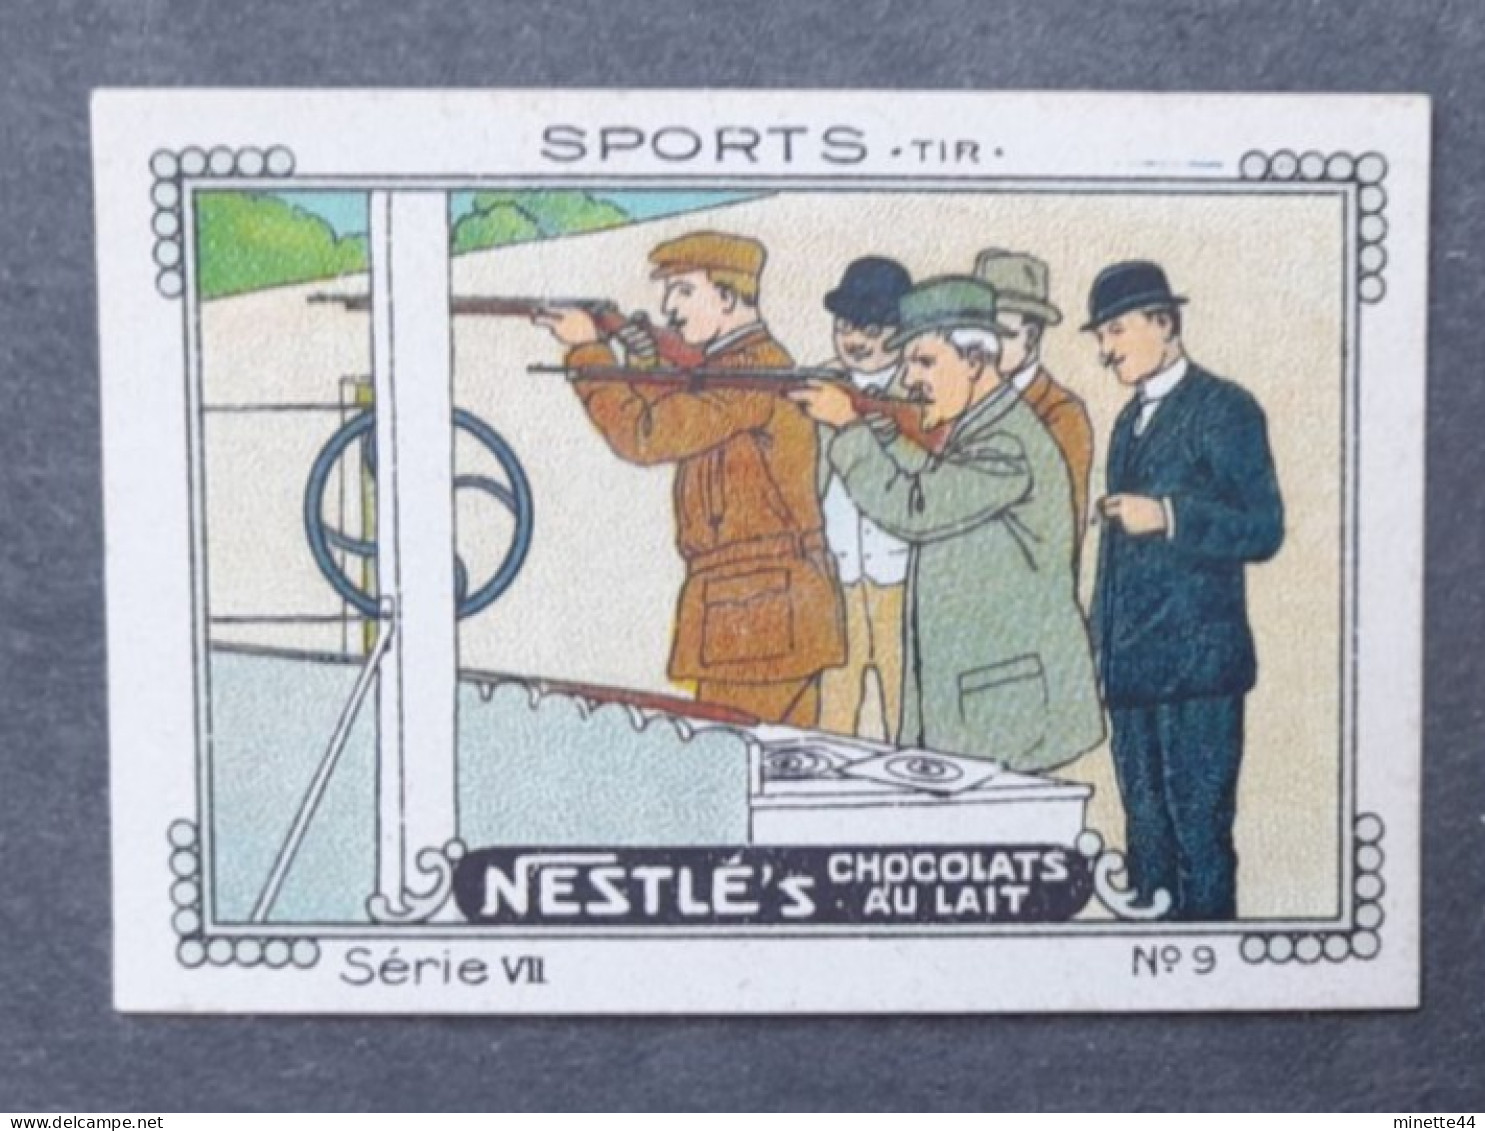 SUISSE NESTLE  1900'  TIR SHOT JEUX GAMES Imperf Nd - Tir (Armes)